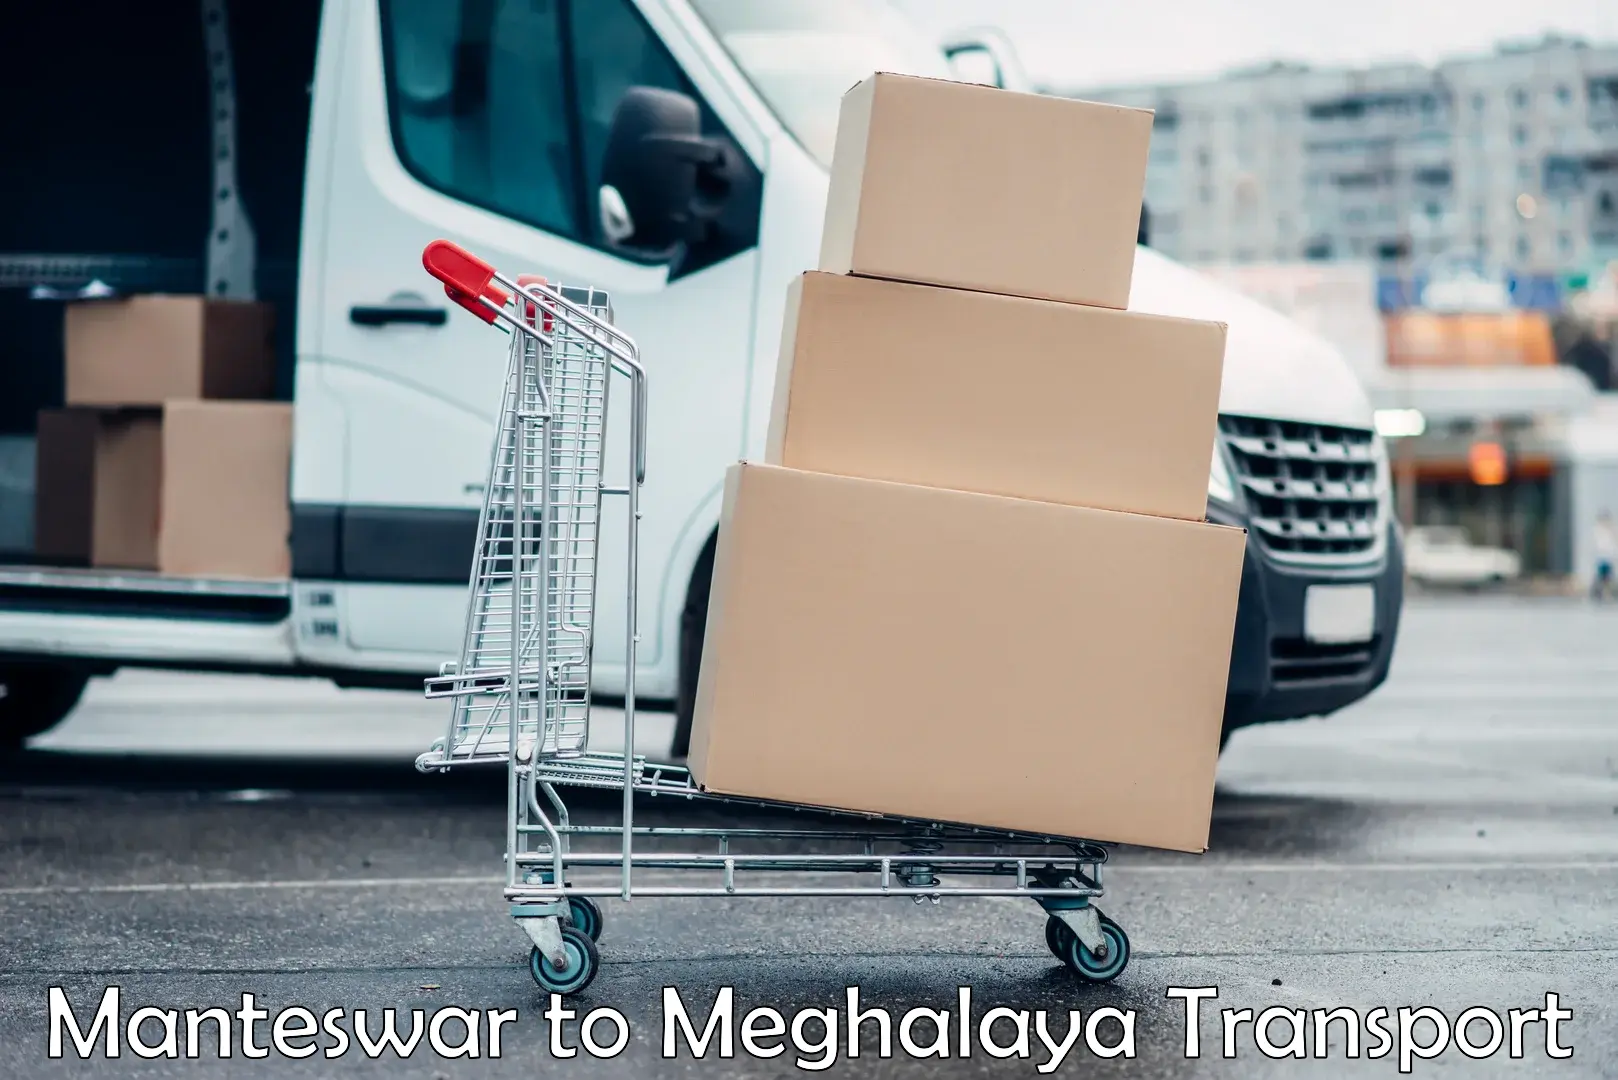 Express transport services Manteswar to NIT Meghalaya